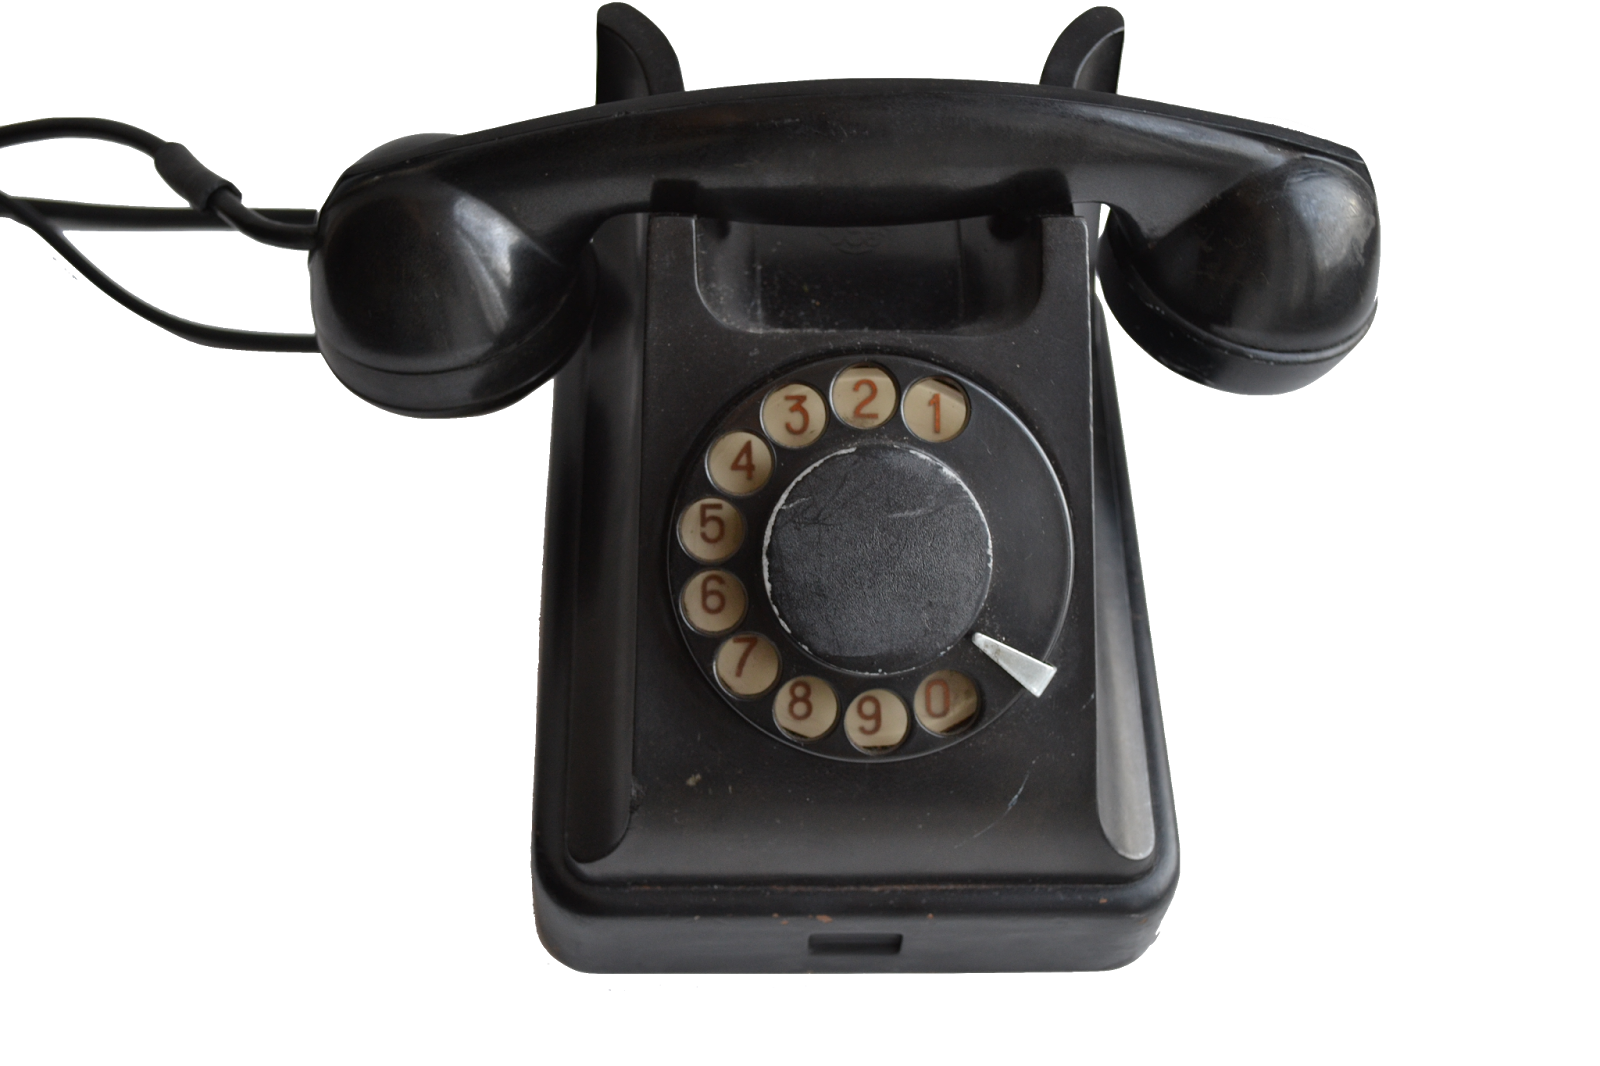 Телефоны 19 9. Телефонный аппарат 20 века. Телефонный аппарат 19 века. Телефонный аппарат кнопочный. Телефон 19 века.